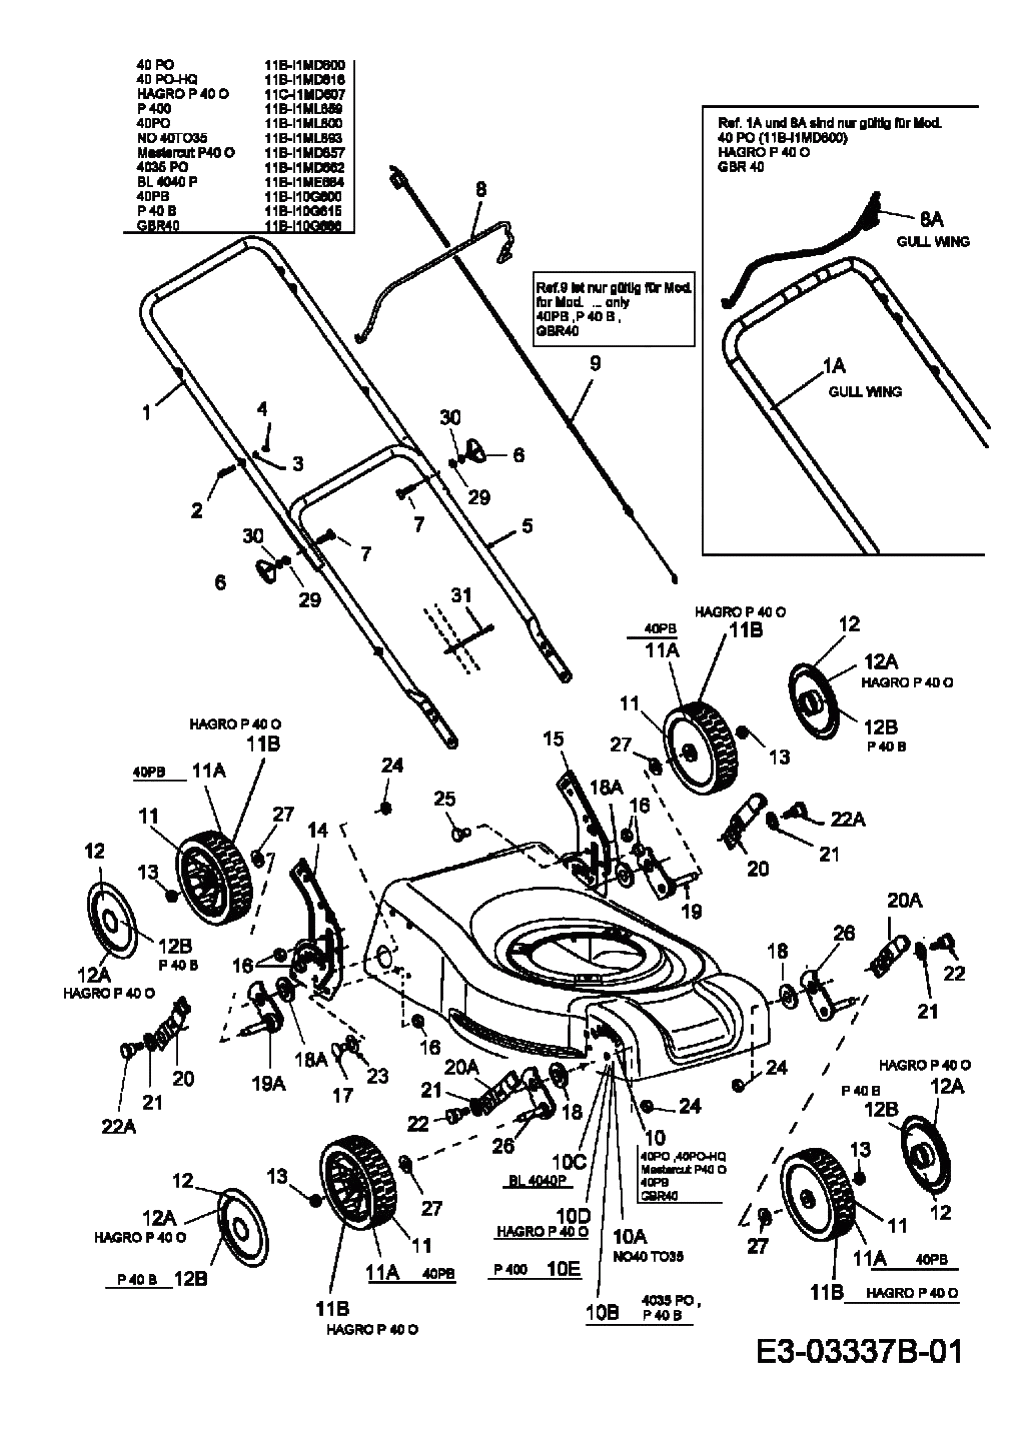 MTD Артикул 11B-I10G600 (год выпуска 2008). Ручка, колеса, регулятор высоты реза